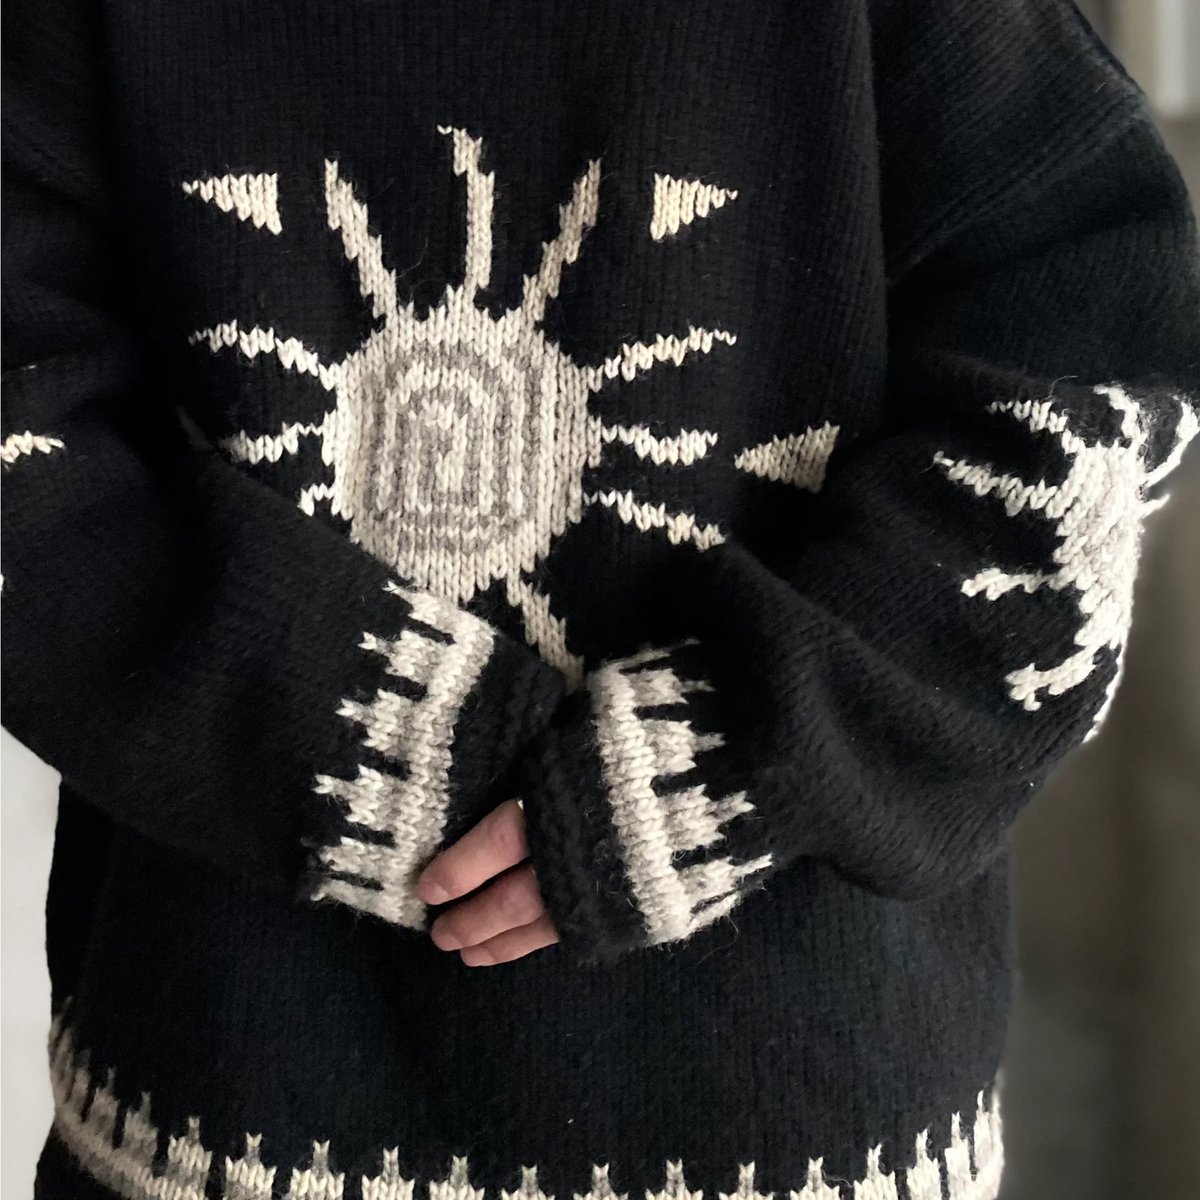 IMBAYA Ecuador Knit Sweater品番